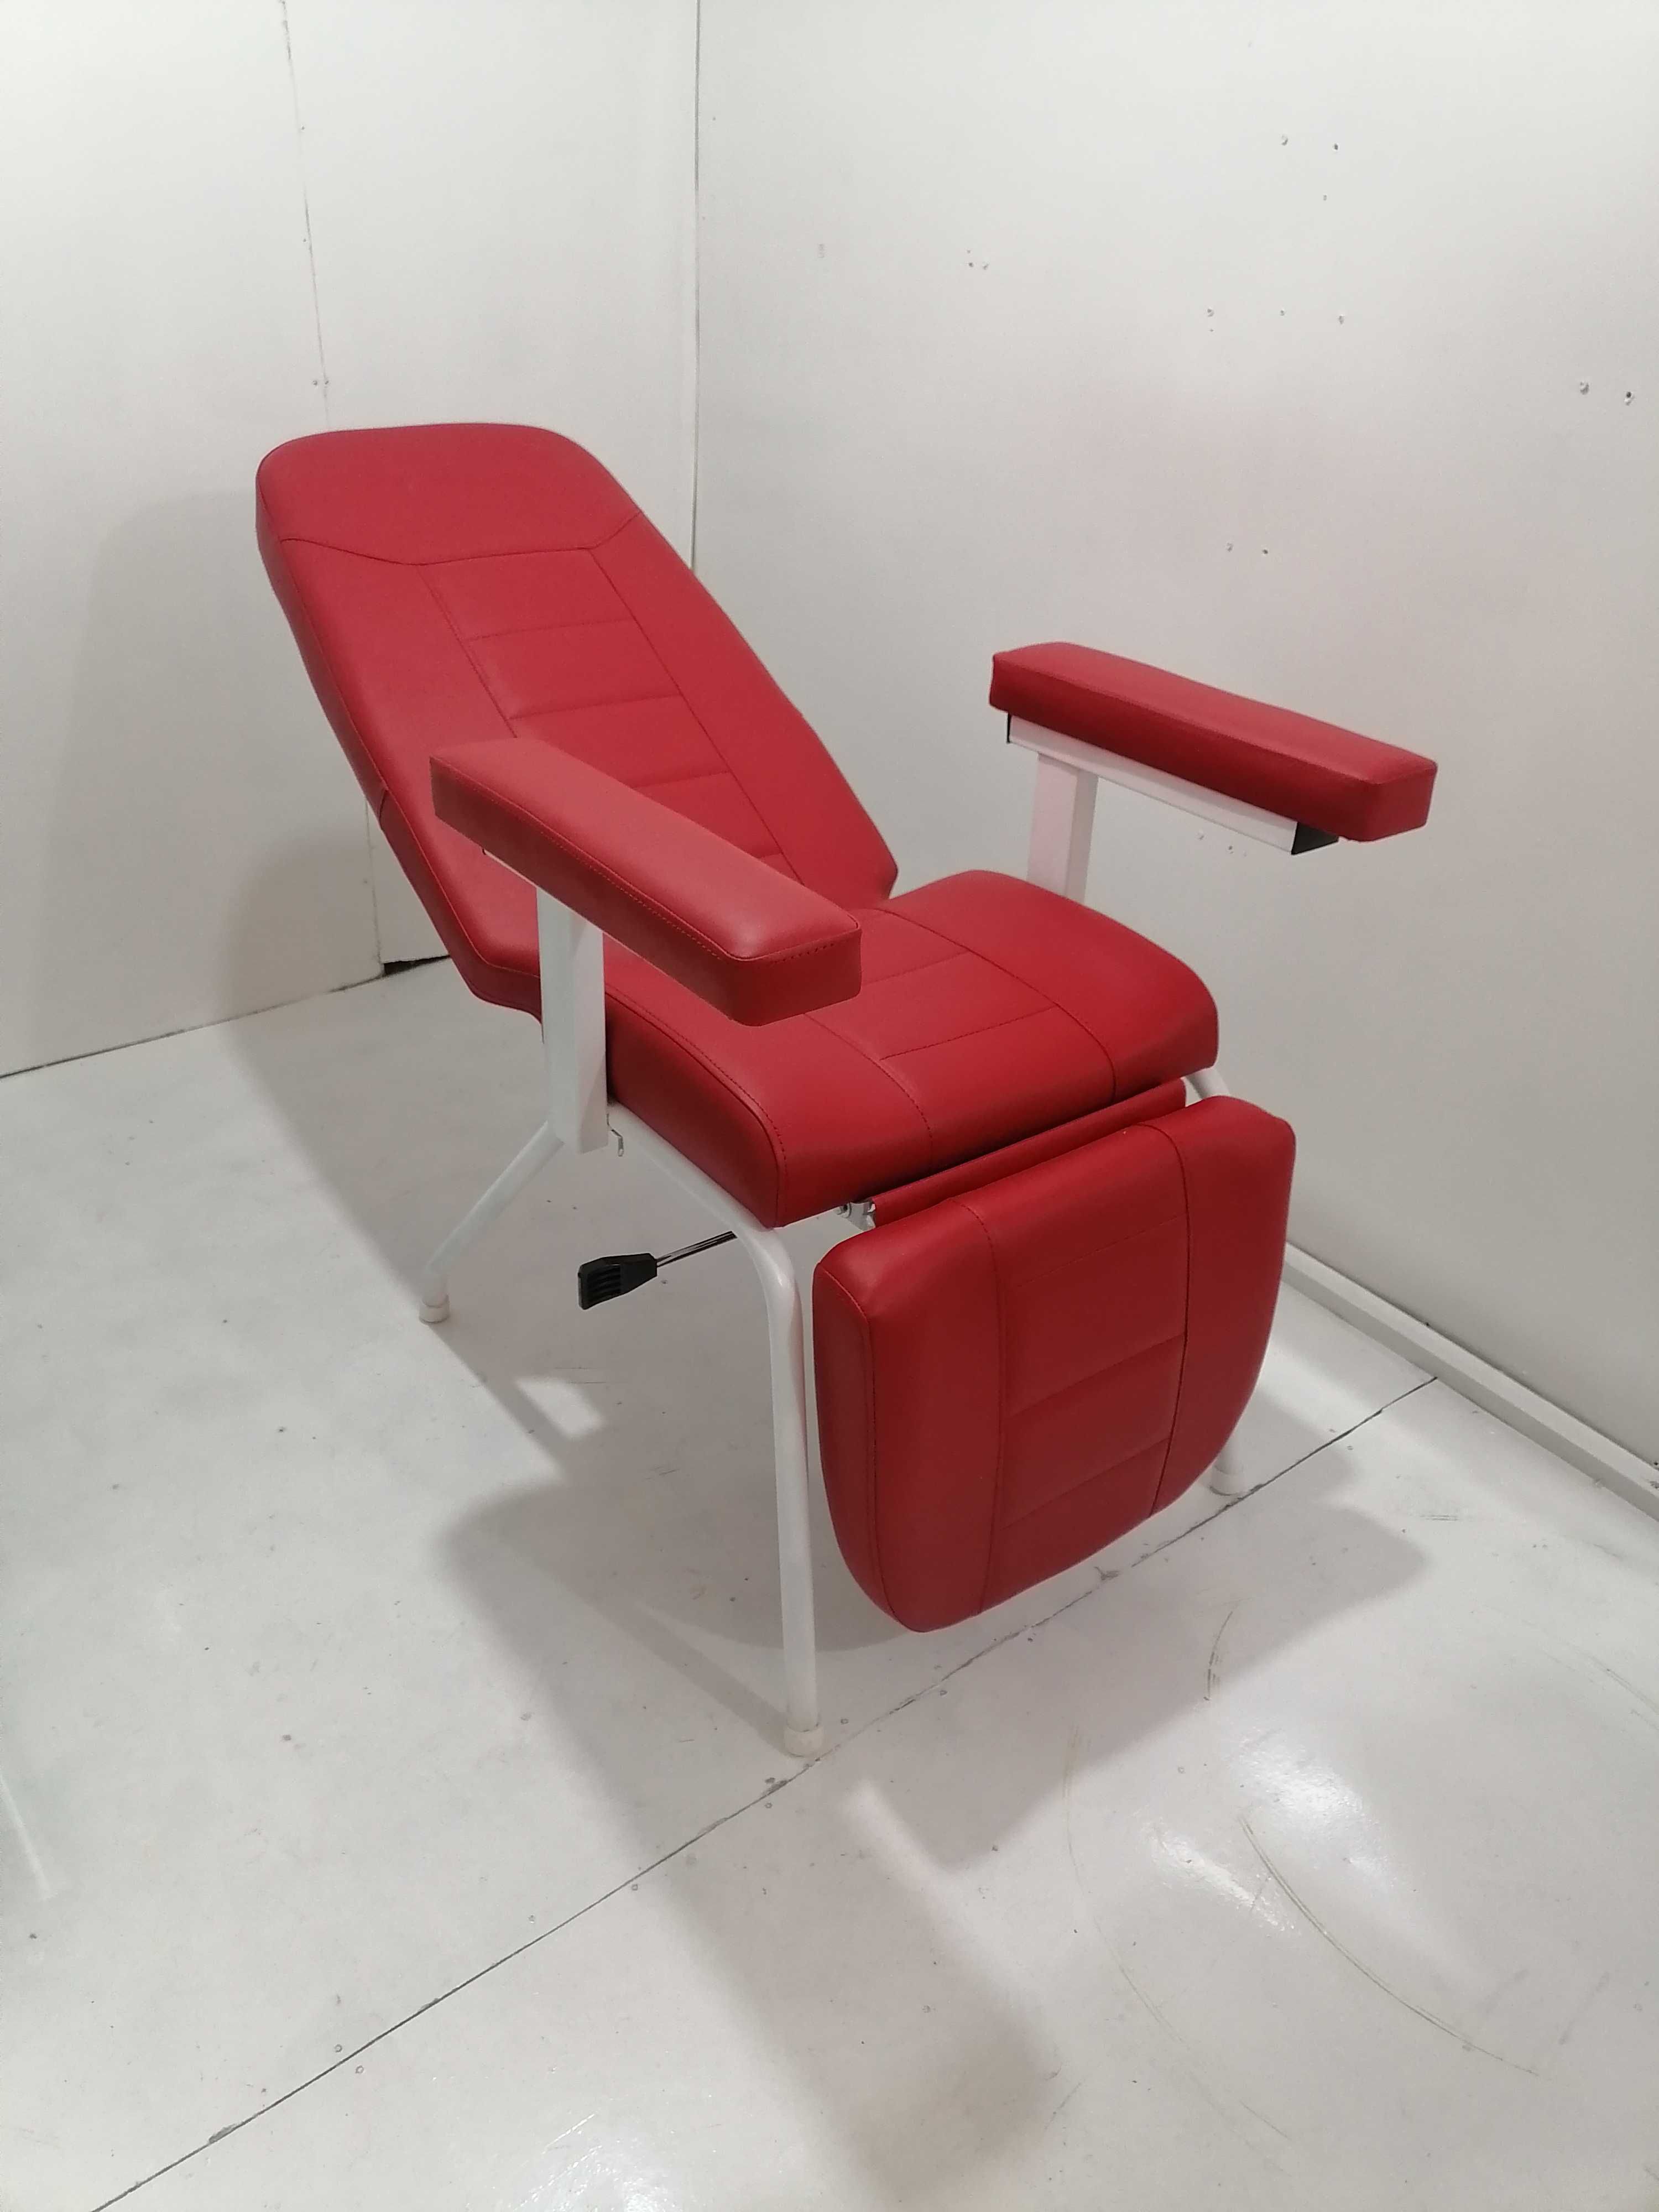 Кресло для забора крови